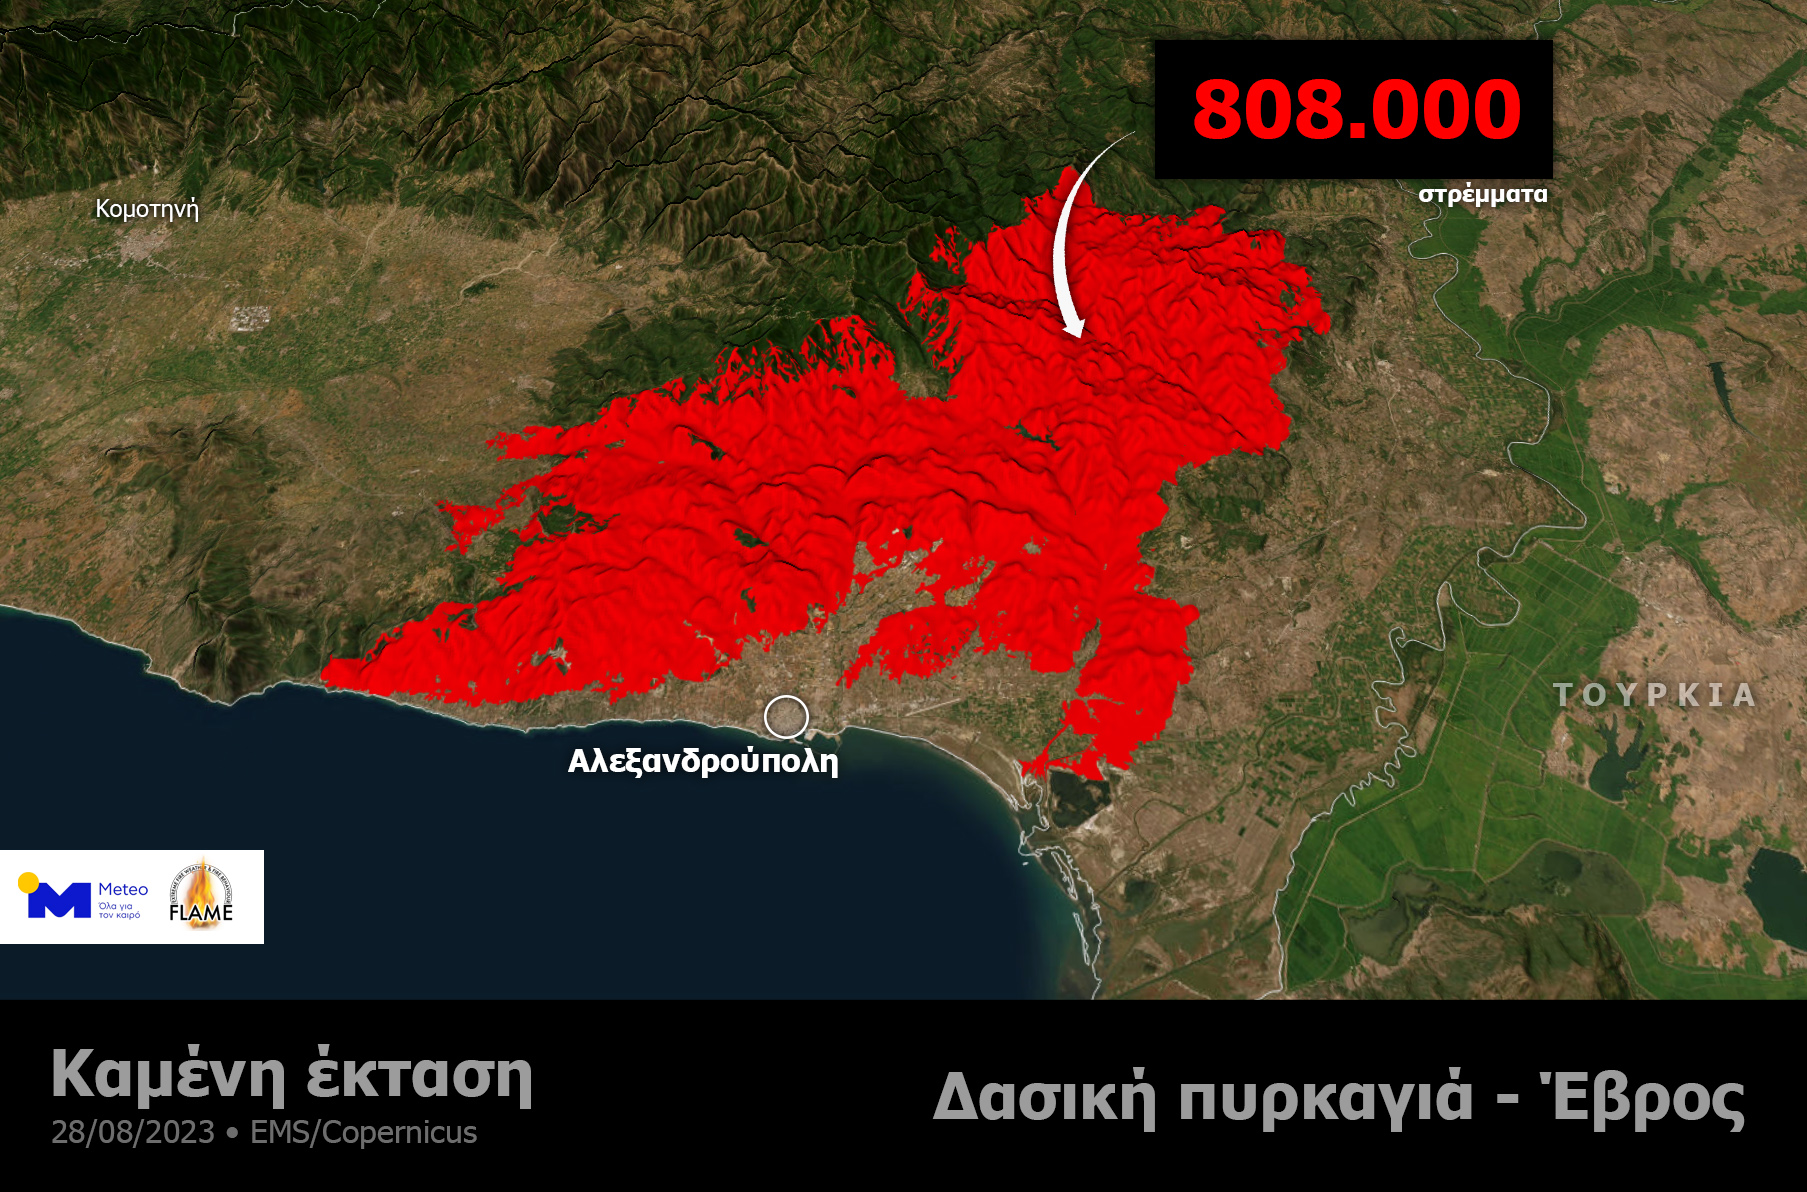 ΜΕΤΕΟ για Έβρο: Περισσότερα από 808.000 καμένα στρέμματα από την μεγάλη φωτιά